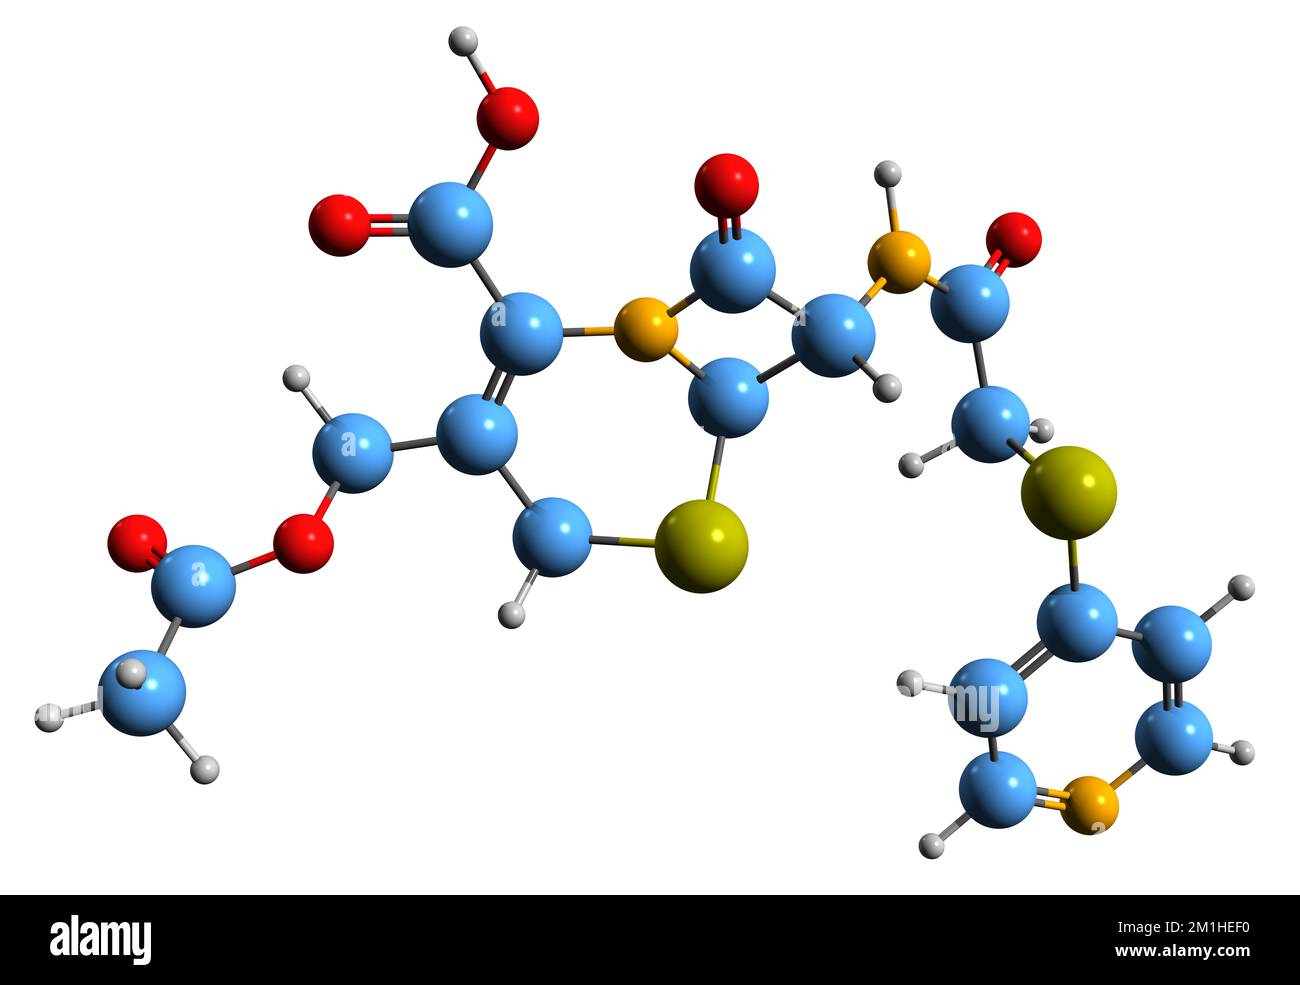 3D-Bild einer Cefapirin-Skelettformel - molekularchemische Struktur eines auf weißem Hintergrund isolierten Cephalosporin-Antibiotikums Stockfoto